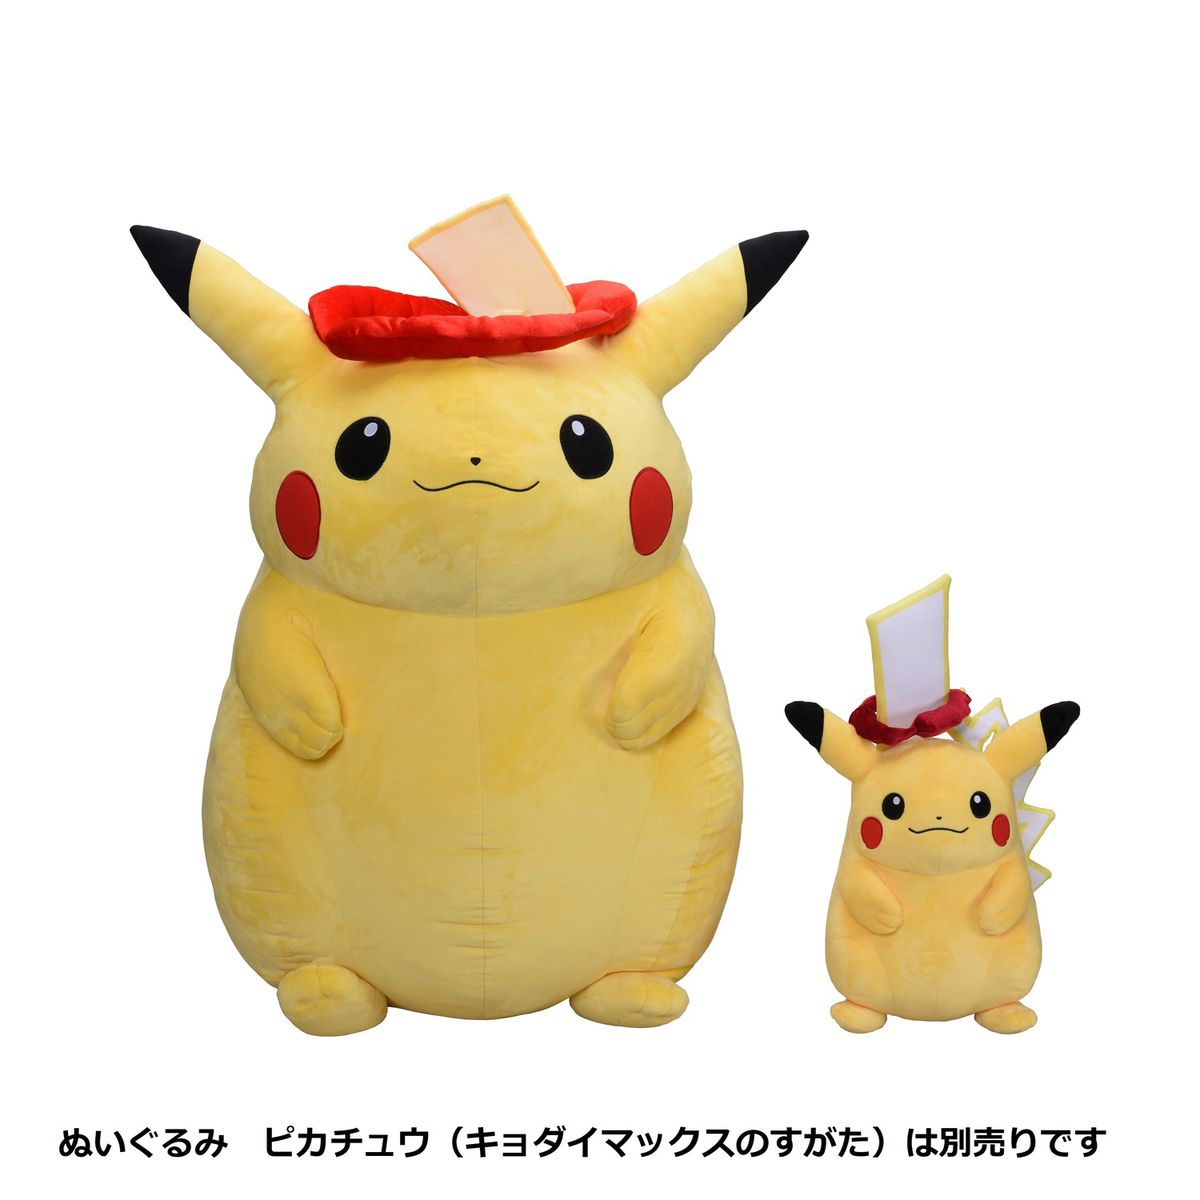 Details about   WCT Pokemon Plush LOT of 5 Larvitar Pikachu Oddish Brand New Mimikyu 